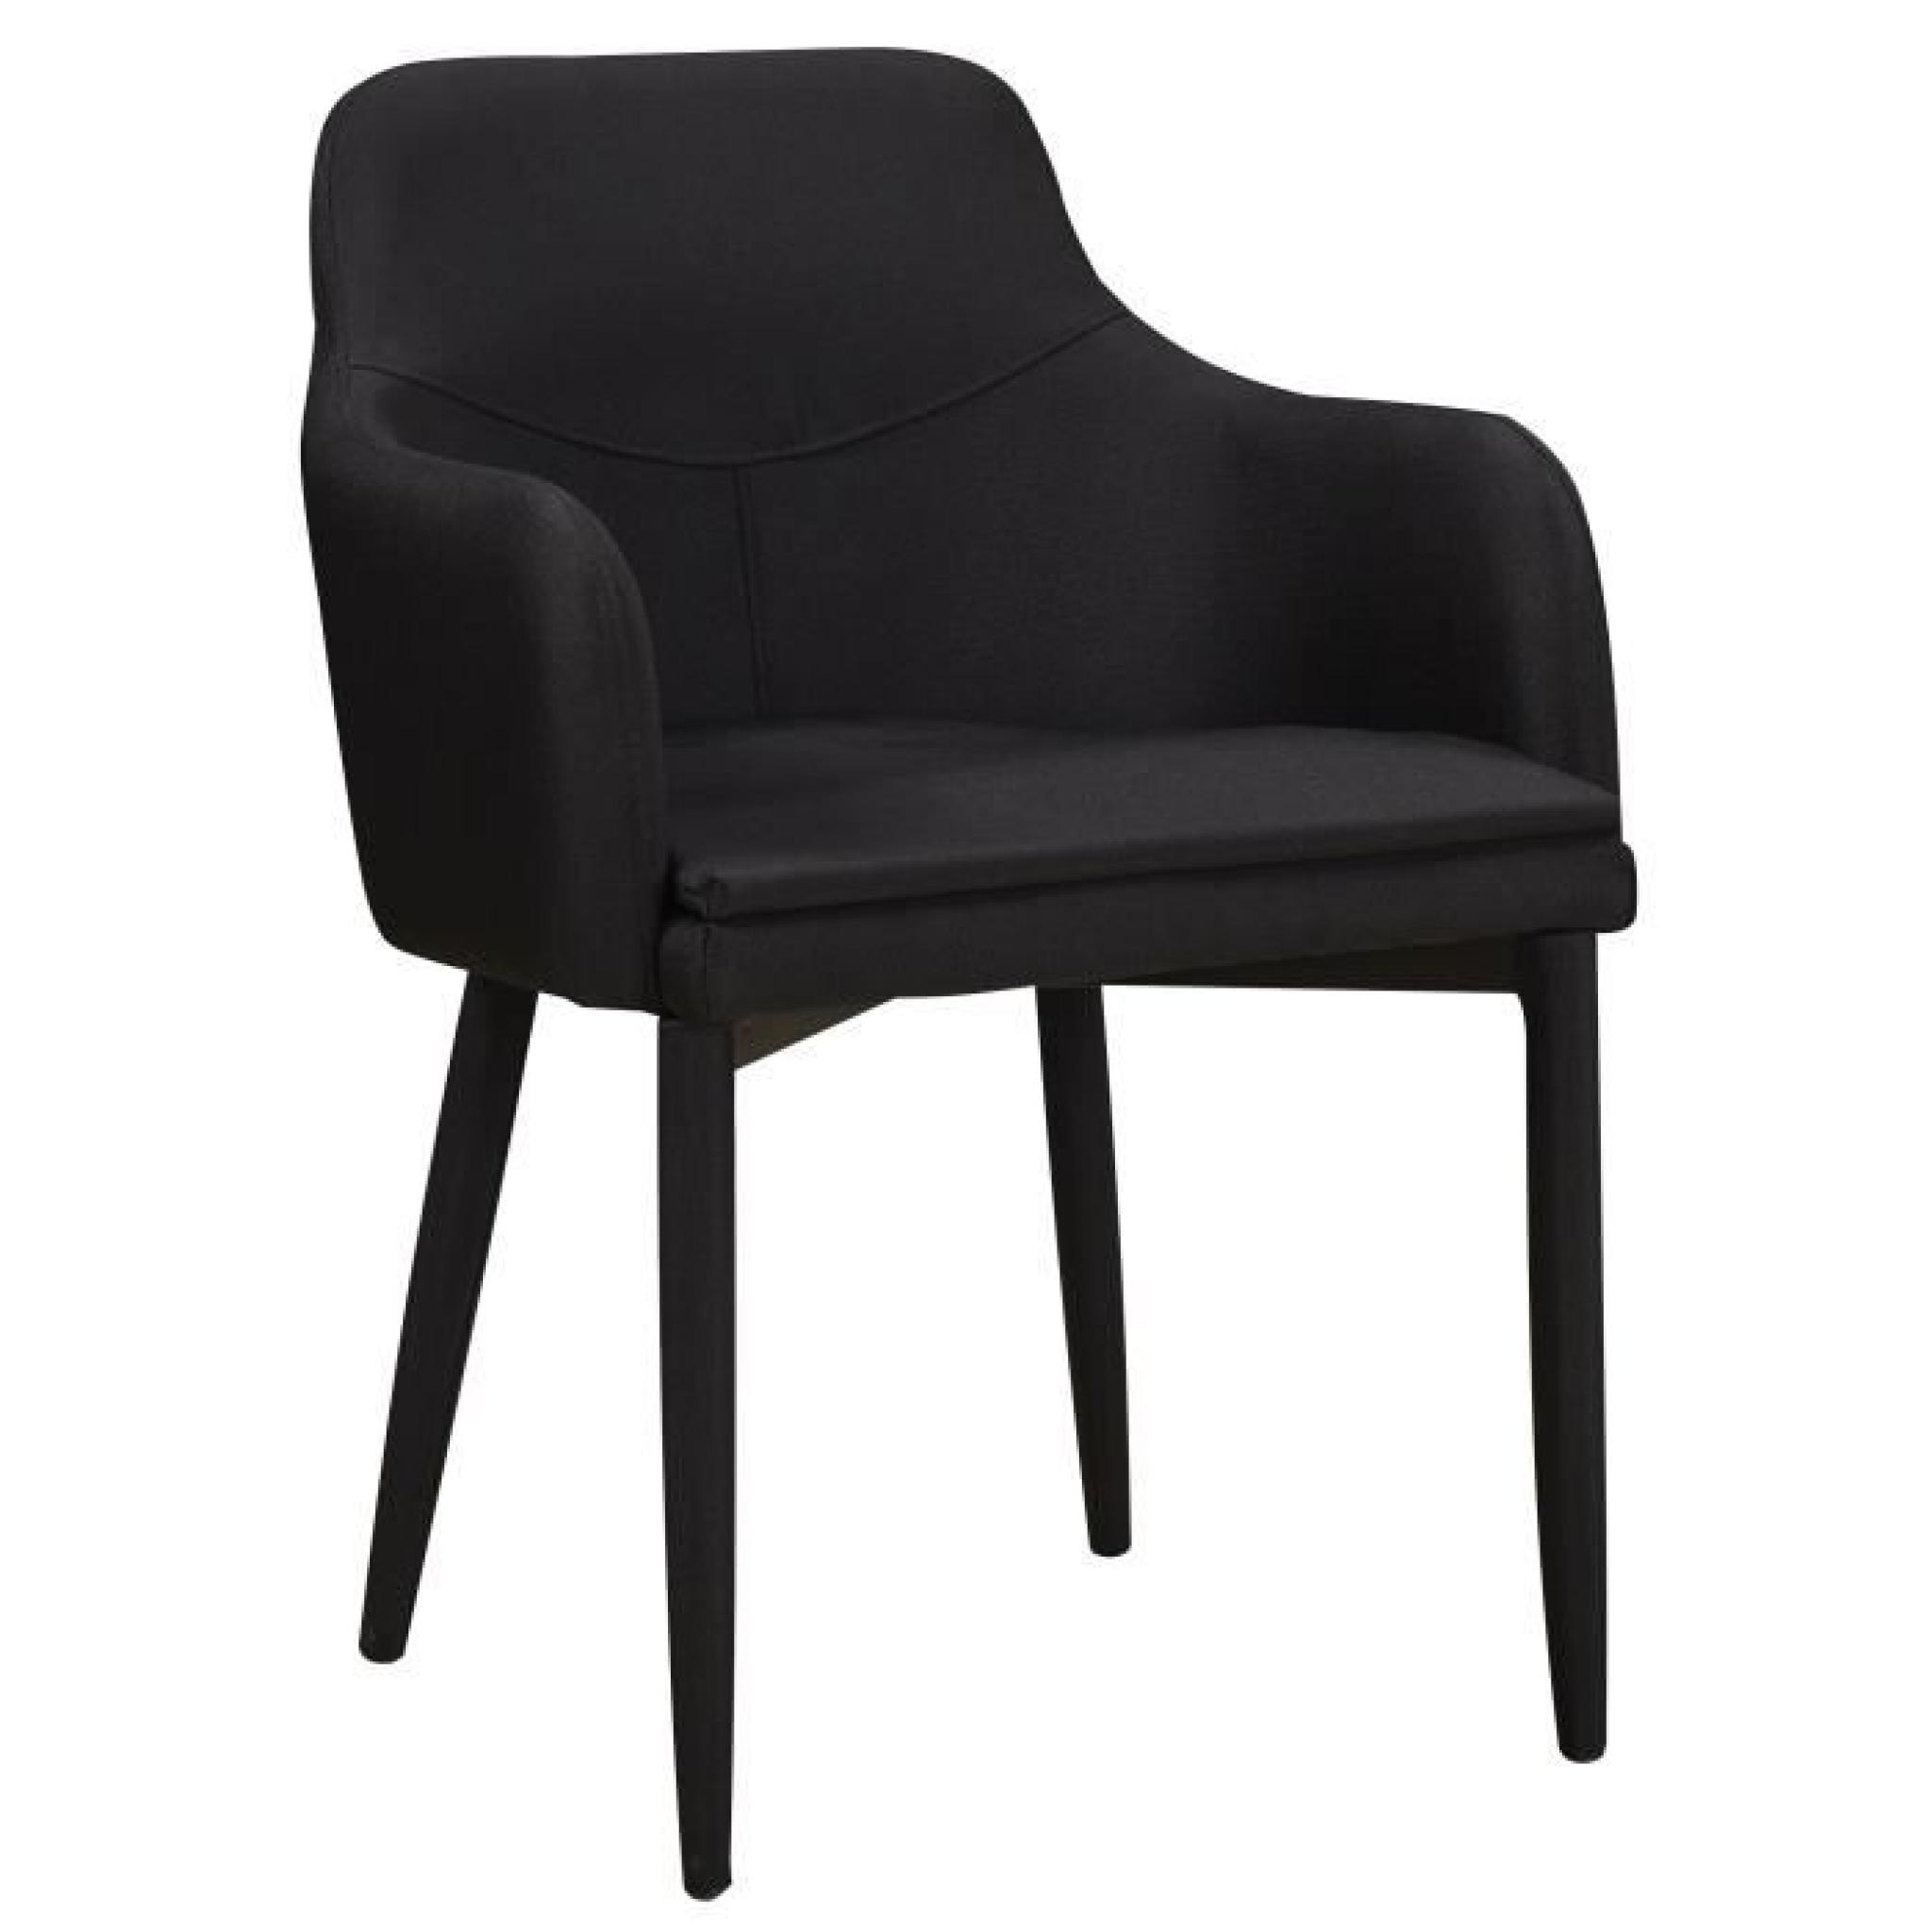 Chaise en tissus design avec accoudoirs coloris noir